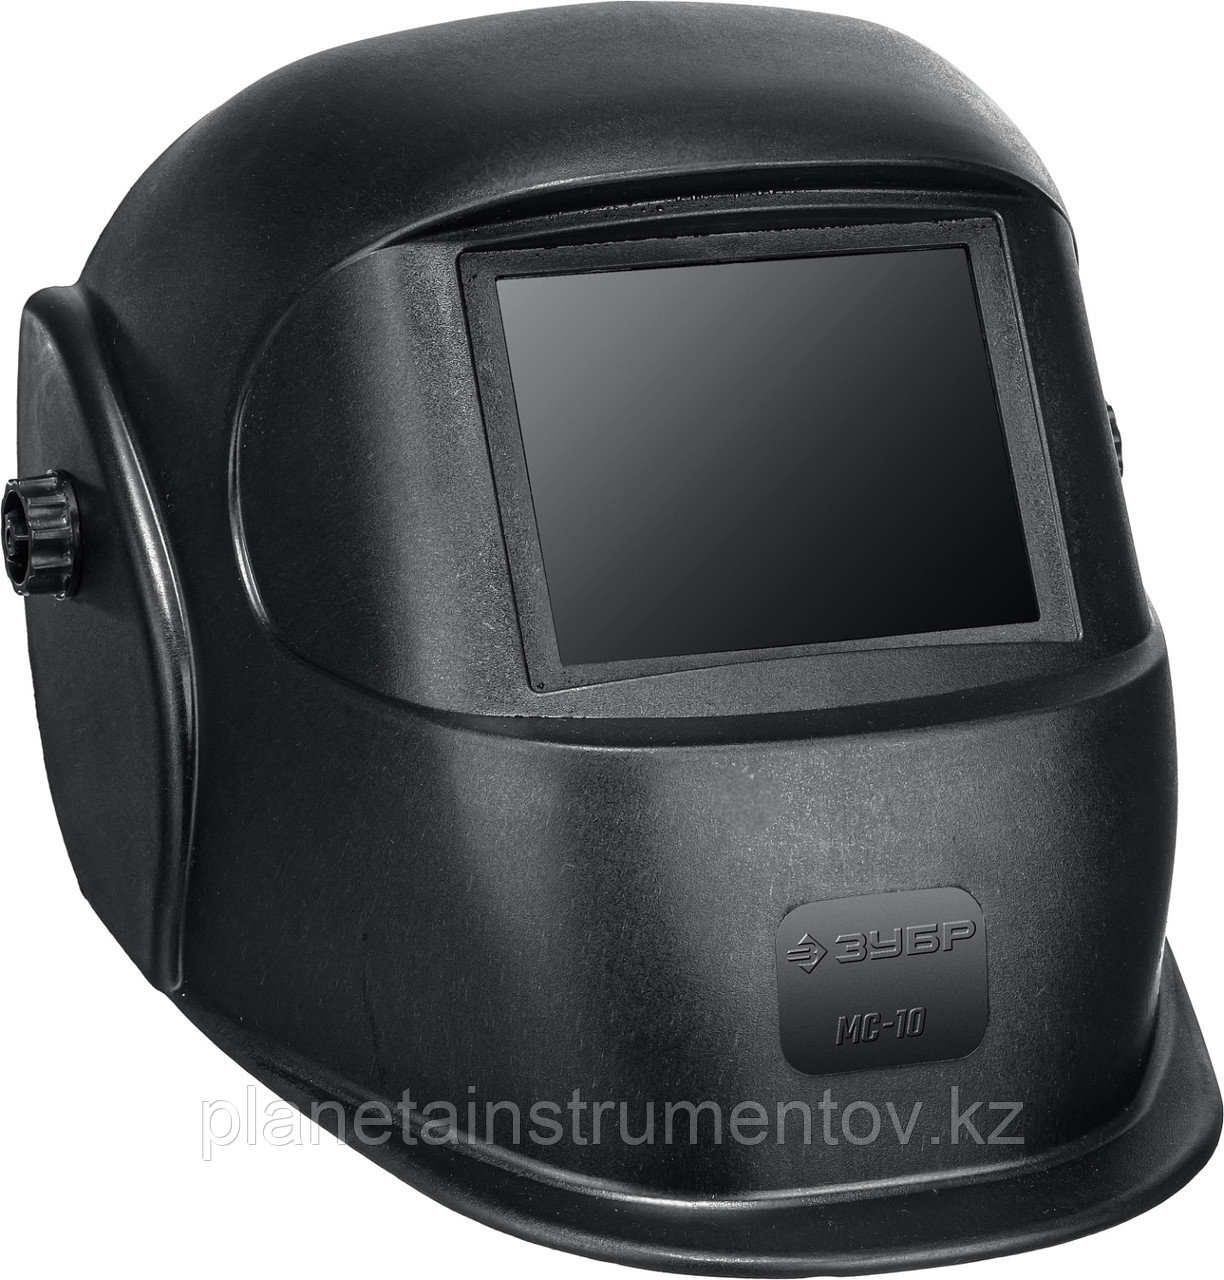 ЗУБР МС-10 со стеклянным светофильтром, затемнение 10, маска сварщика (11080)